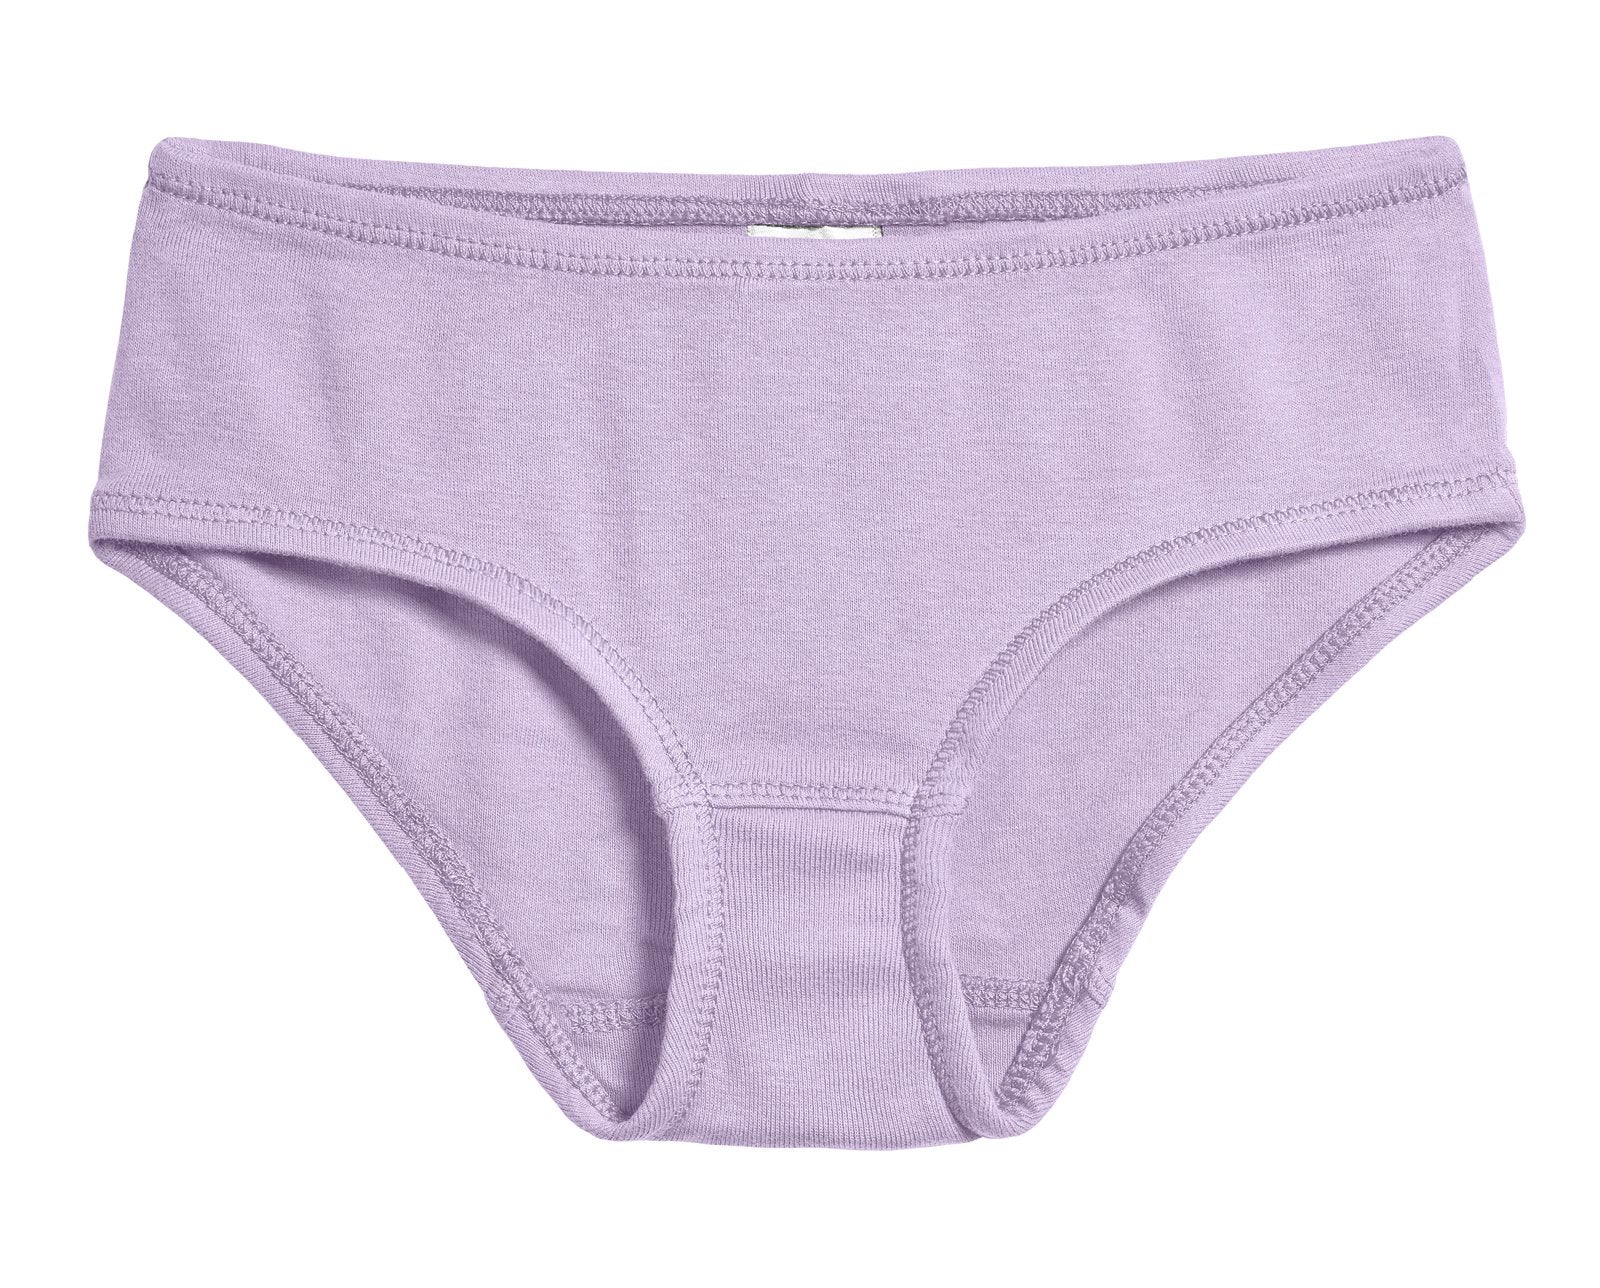 Kids Undies Toddlers Girls Briefs, 100% Organic Naturally Colored Cotton  Childrens Underwear, 2-4Y 